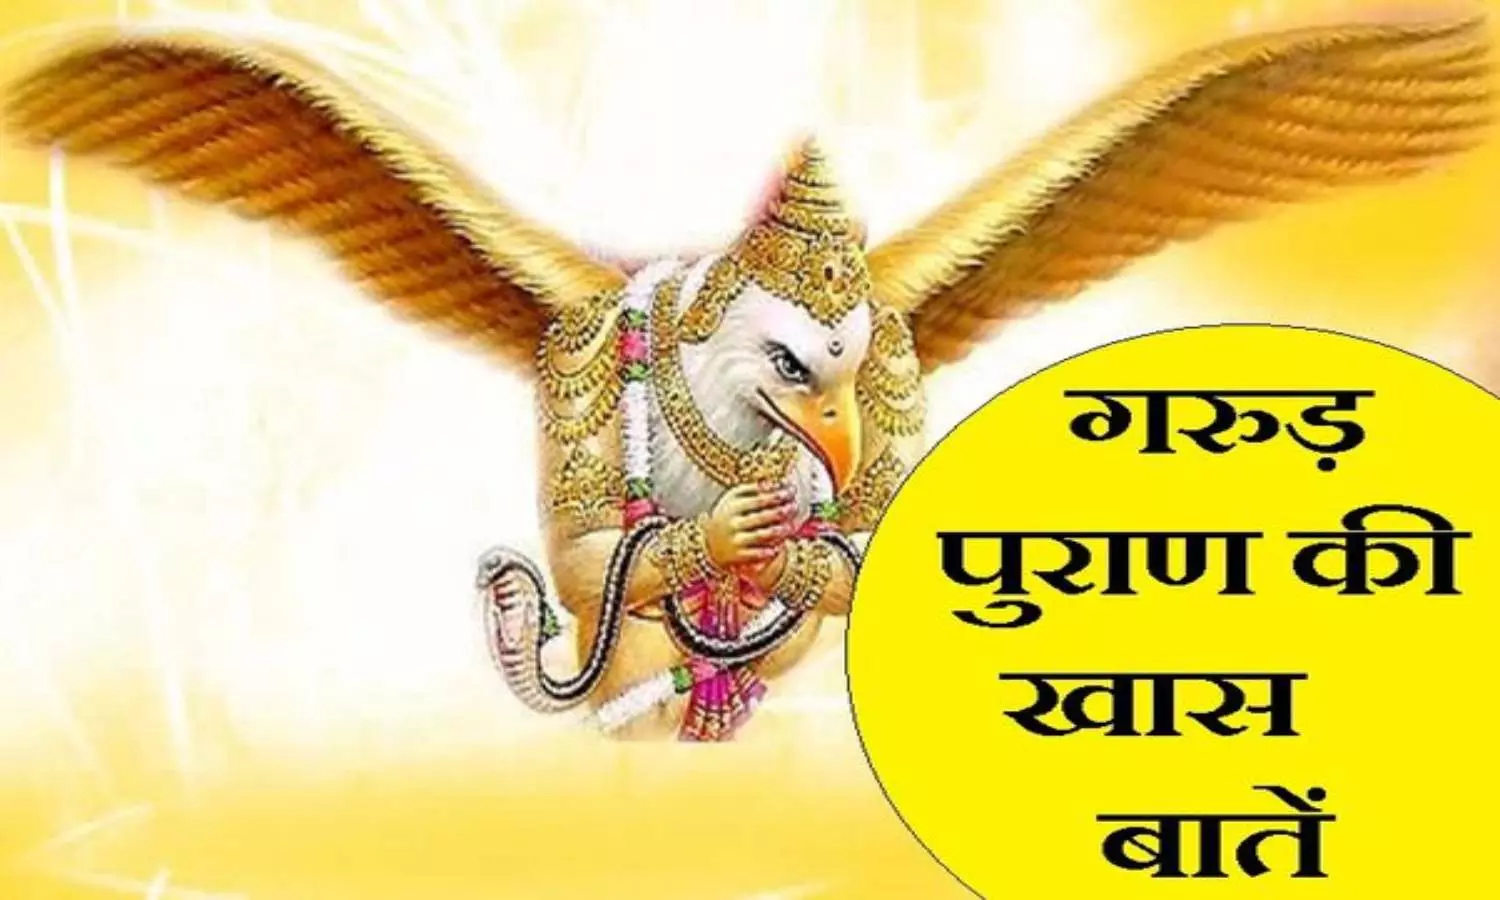 Garuda Purana: मृत्यु के समय क्यों आंखें हो जातीं हैं ऐसी, जानिए क्या बताया गया है गरुण पुराण में